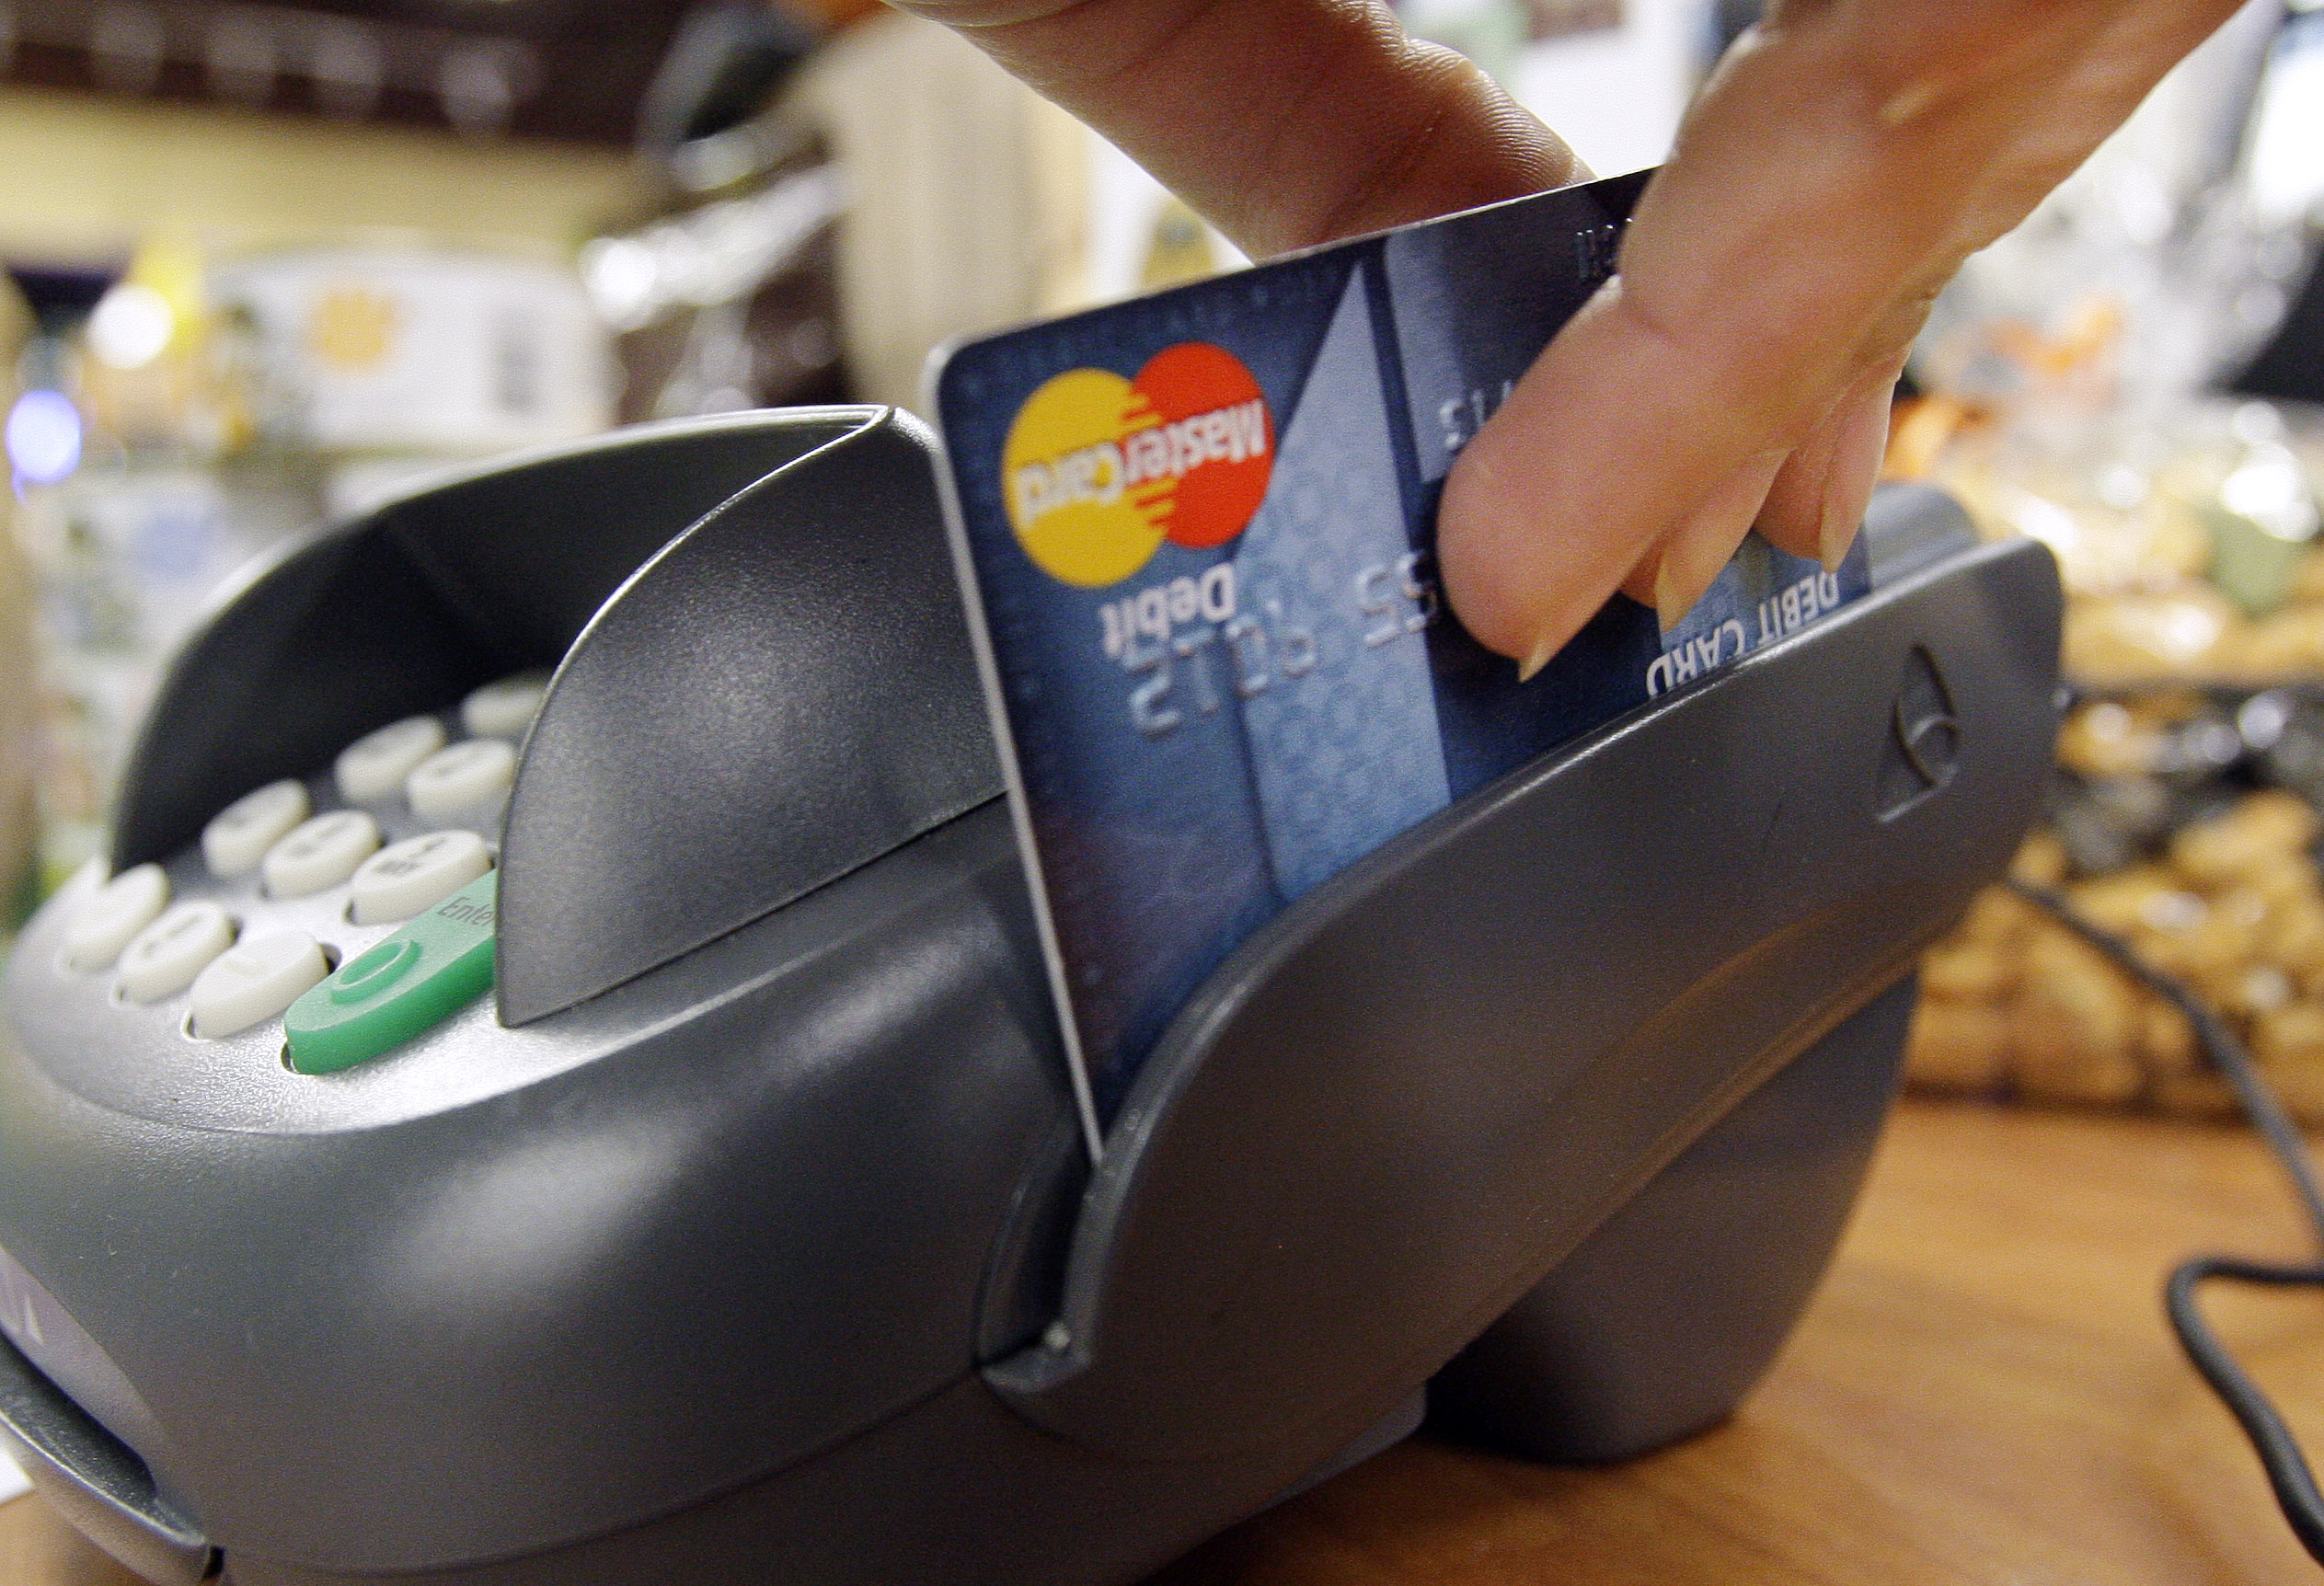 A debit card being swiped